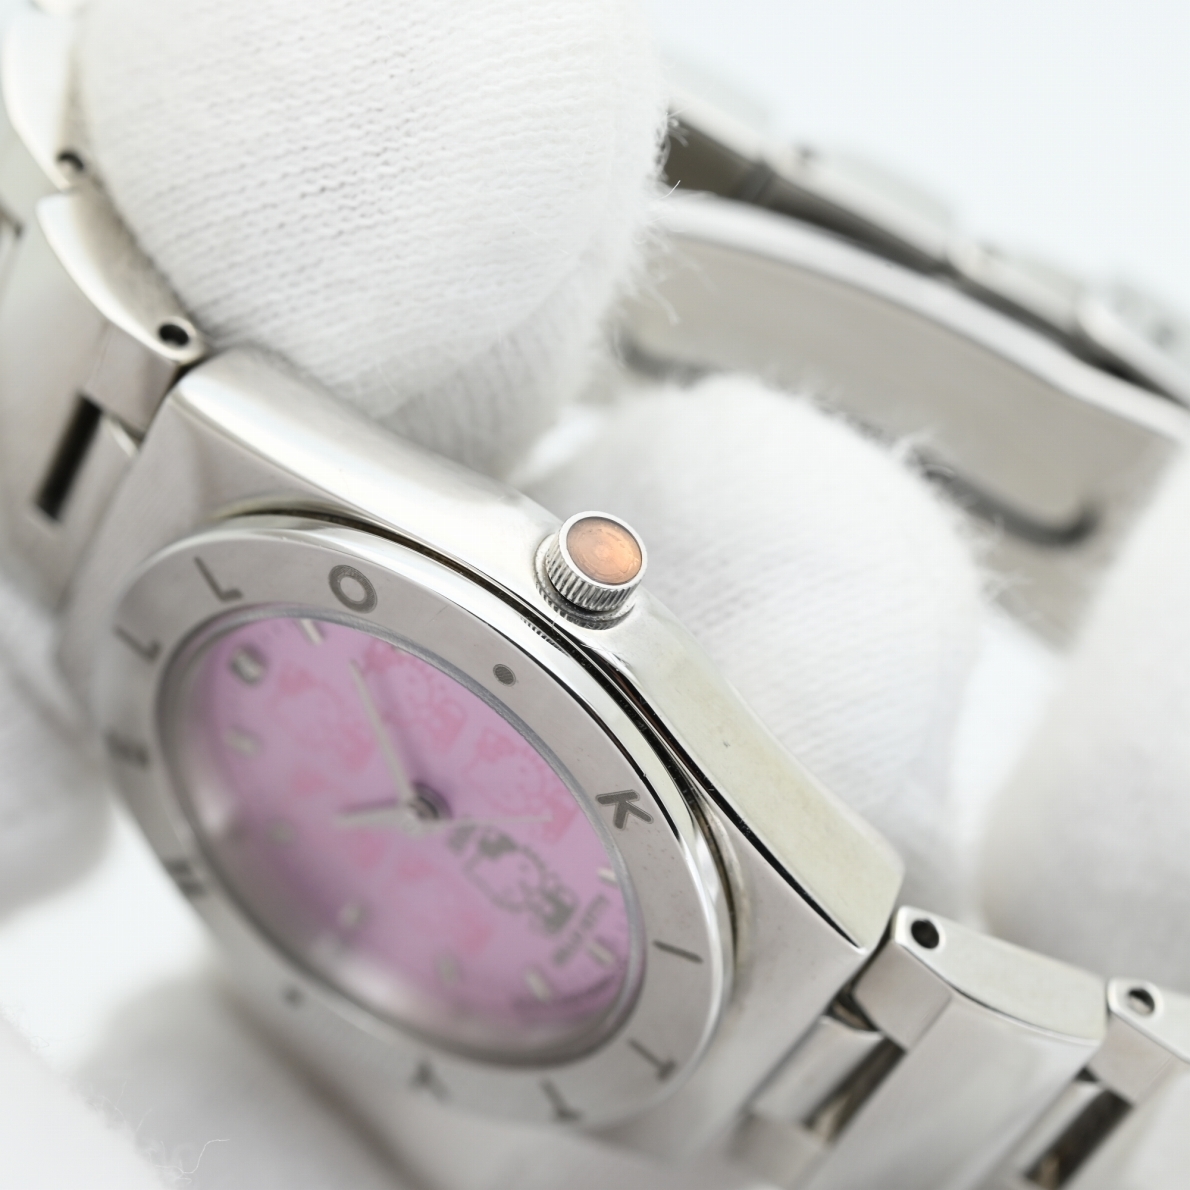 ハローキティちゃん■2000年 限定モデル 状態良好 サンリオ 新品電池交換済み クォーツ レディース腕時計 ピンク シチズン製 ステンレス 